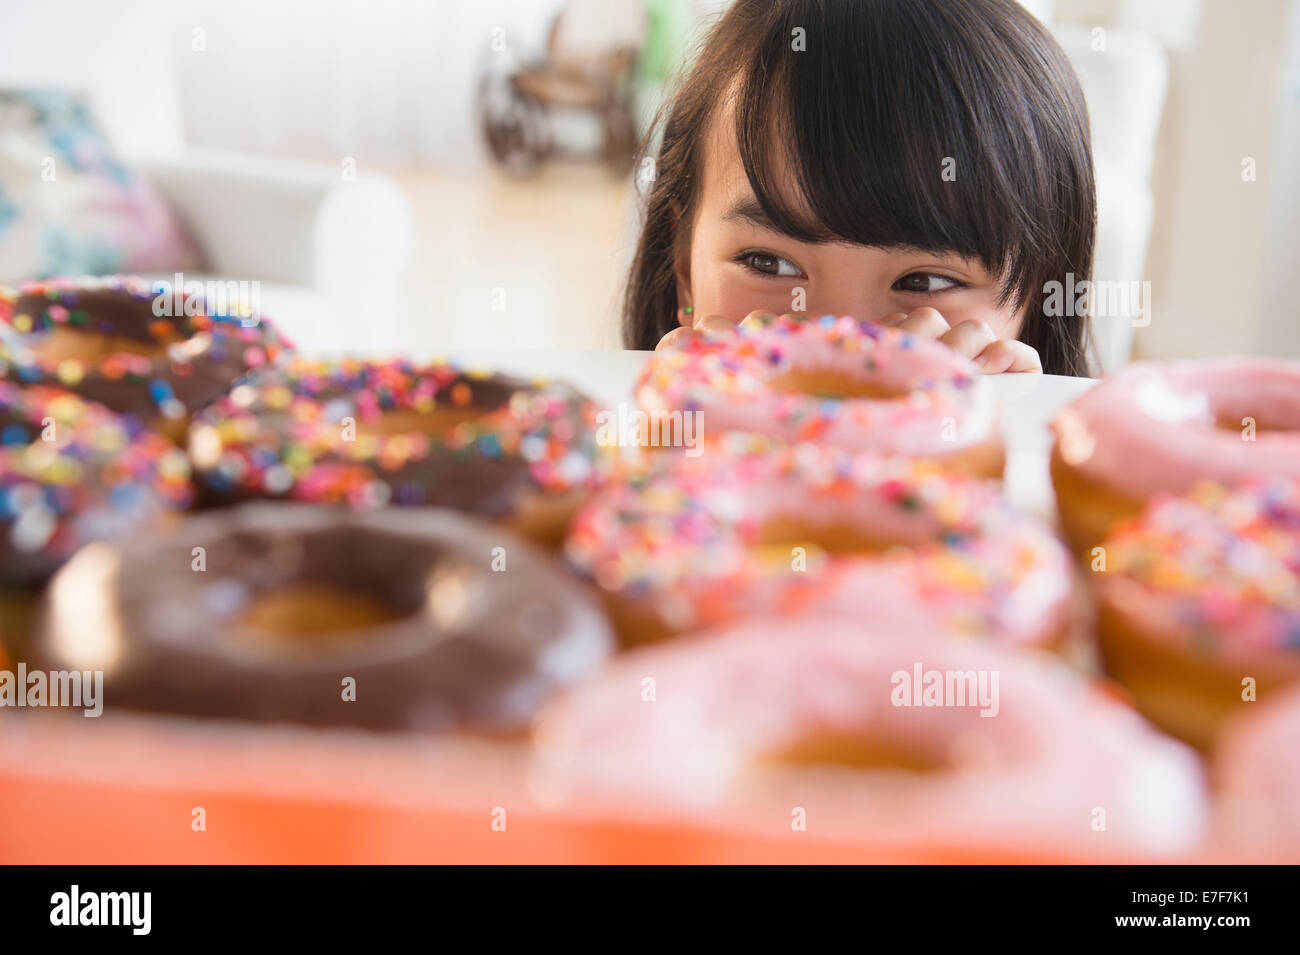 Philippinische Mädchen peering bei Donuts auf Tisch Stockfoto